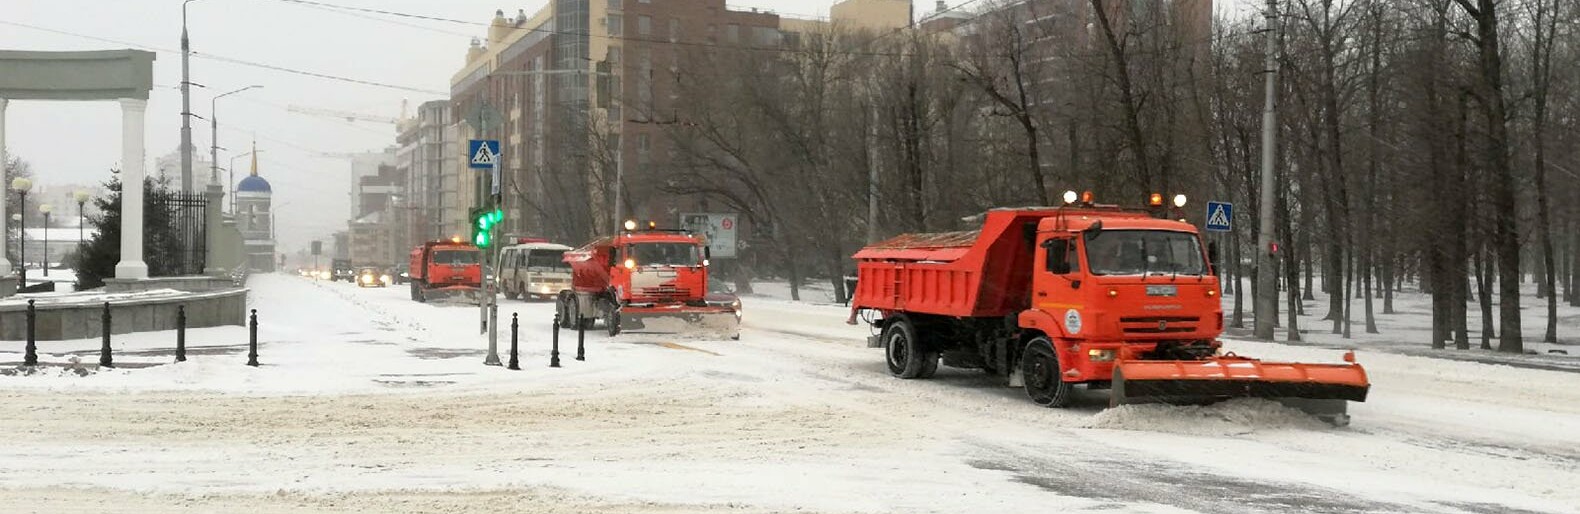 Белгородцы не справляются с управлением из-за обильного снега на дорогах